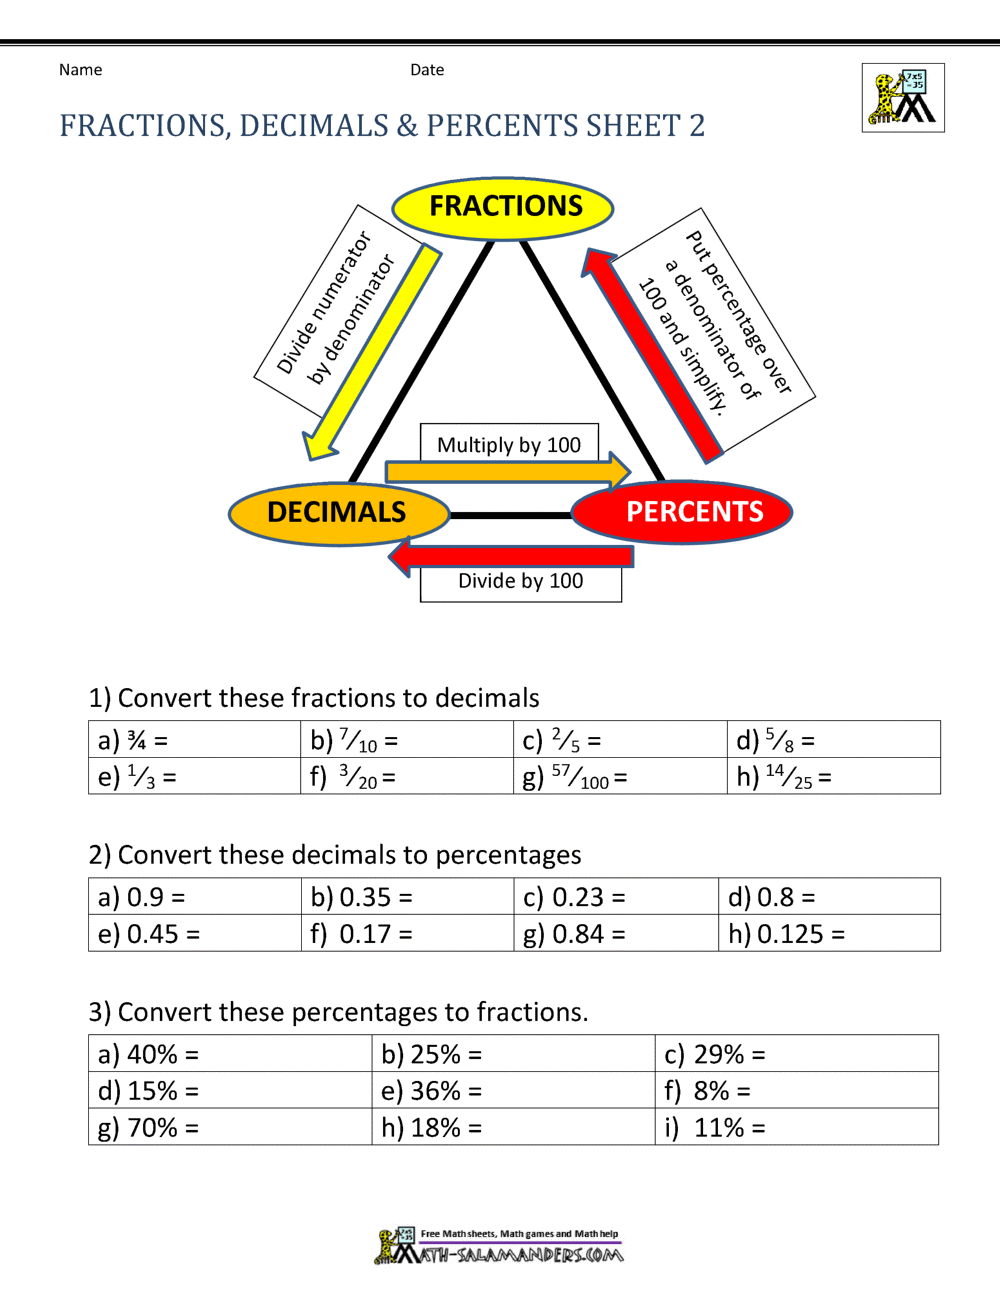 Fractions Decimals Percents Worksheets In Ordering Fractions And Decimals Worksheet